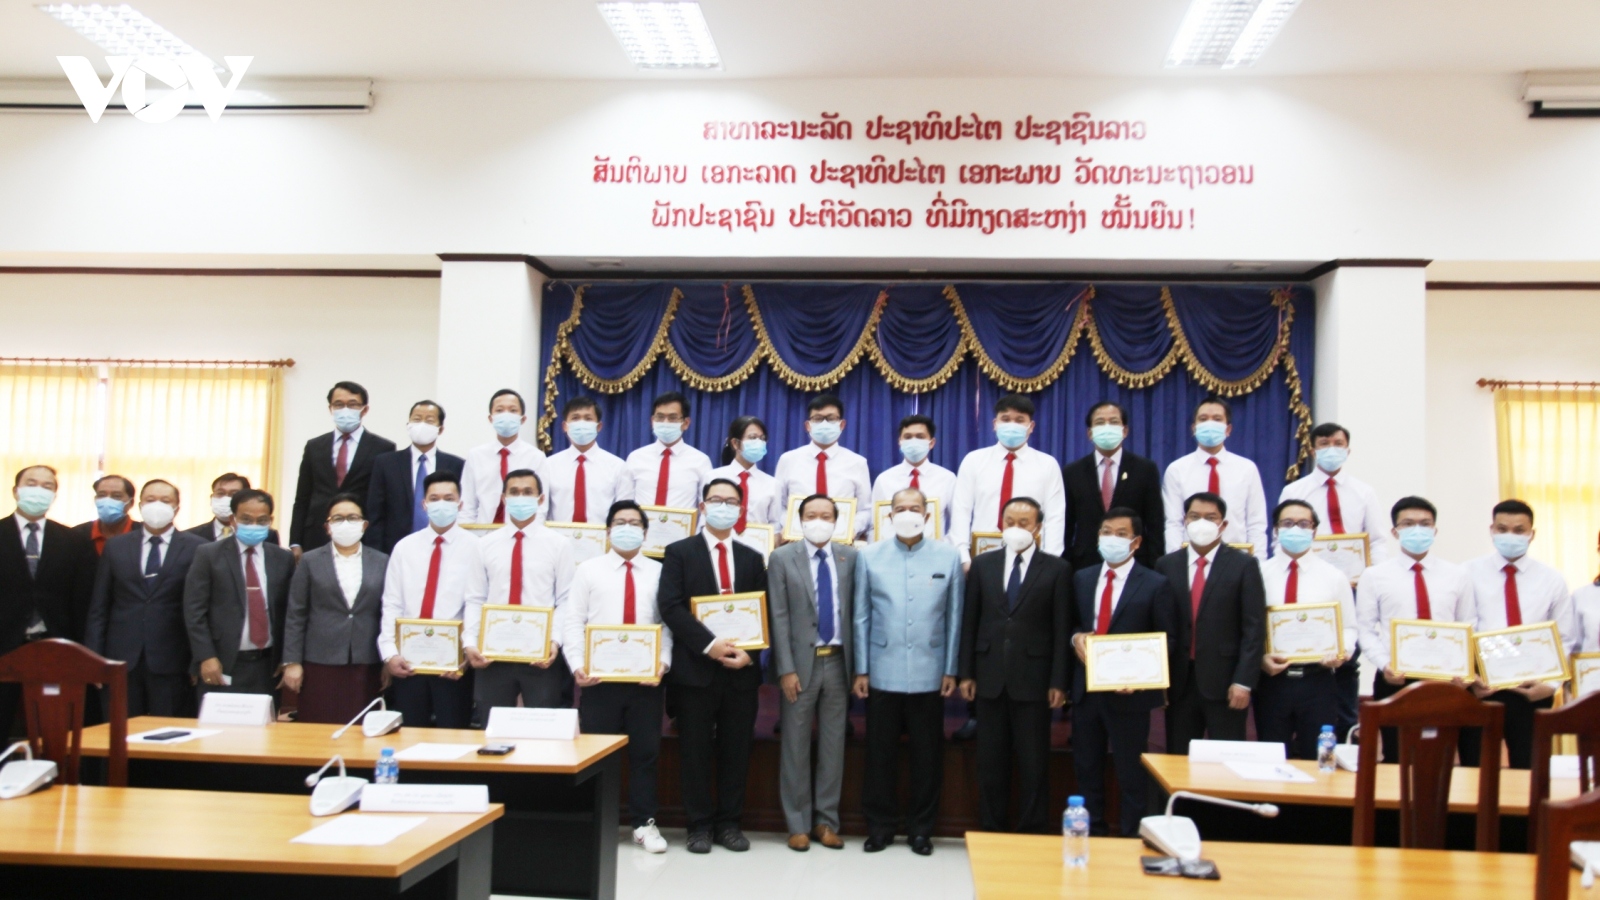 Chính phủ Lào đánh giá cao đoàn chuyên gia y tế Việt Nam giúp chống dịch Covid-19  